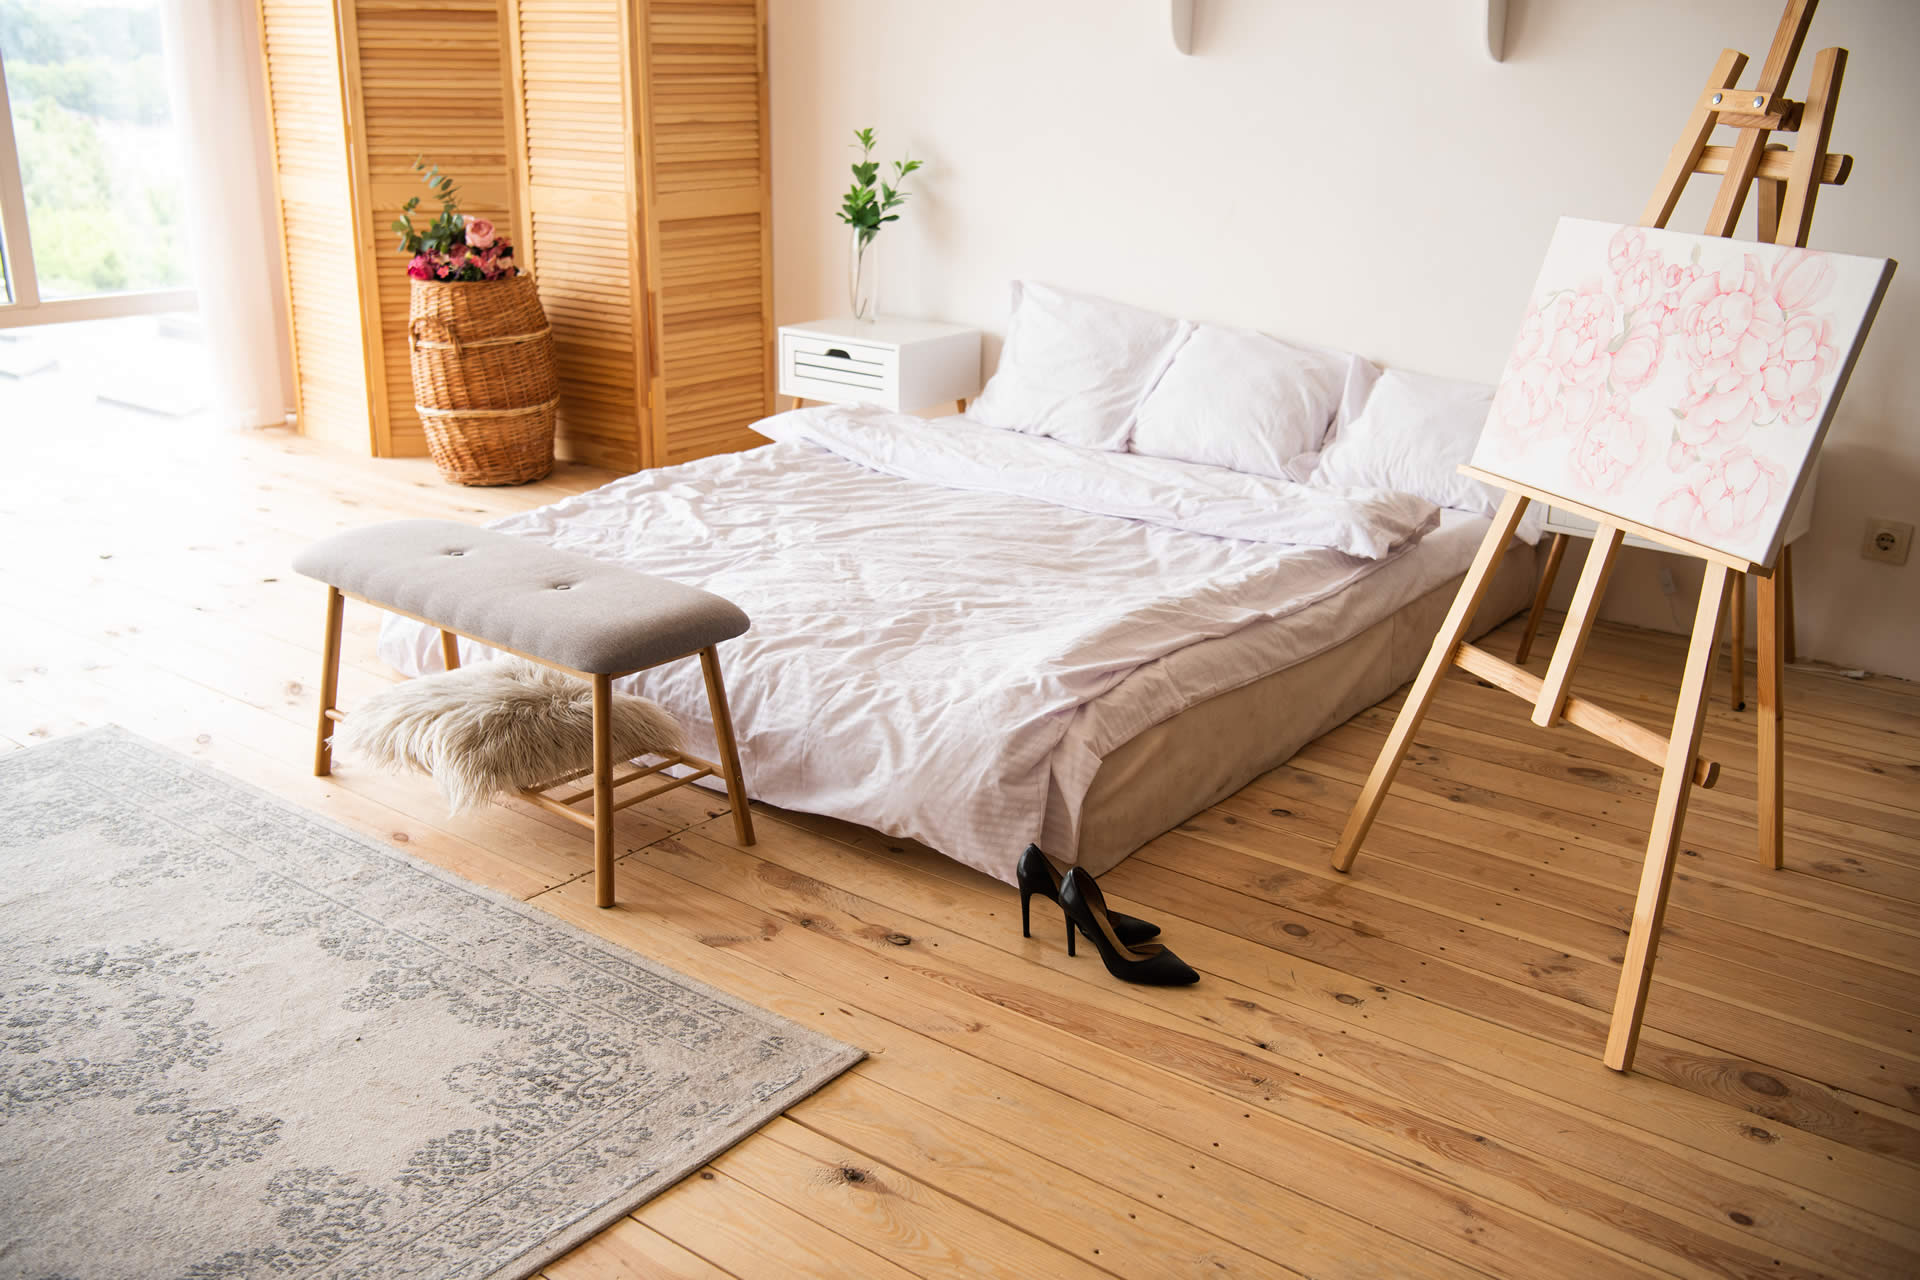 Camera da letto - stile Scandinavo arredare con gusto